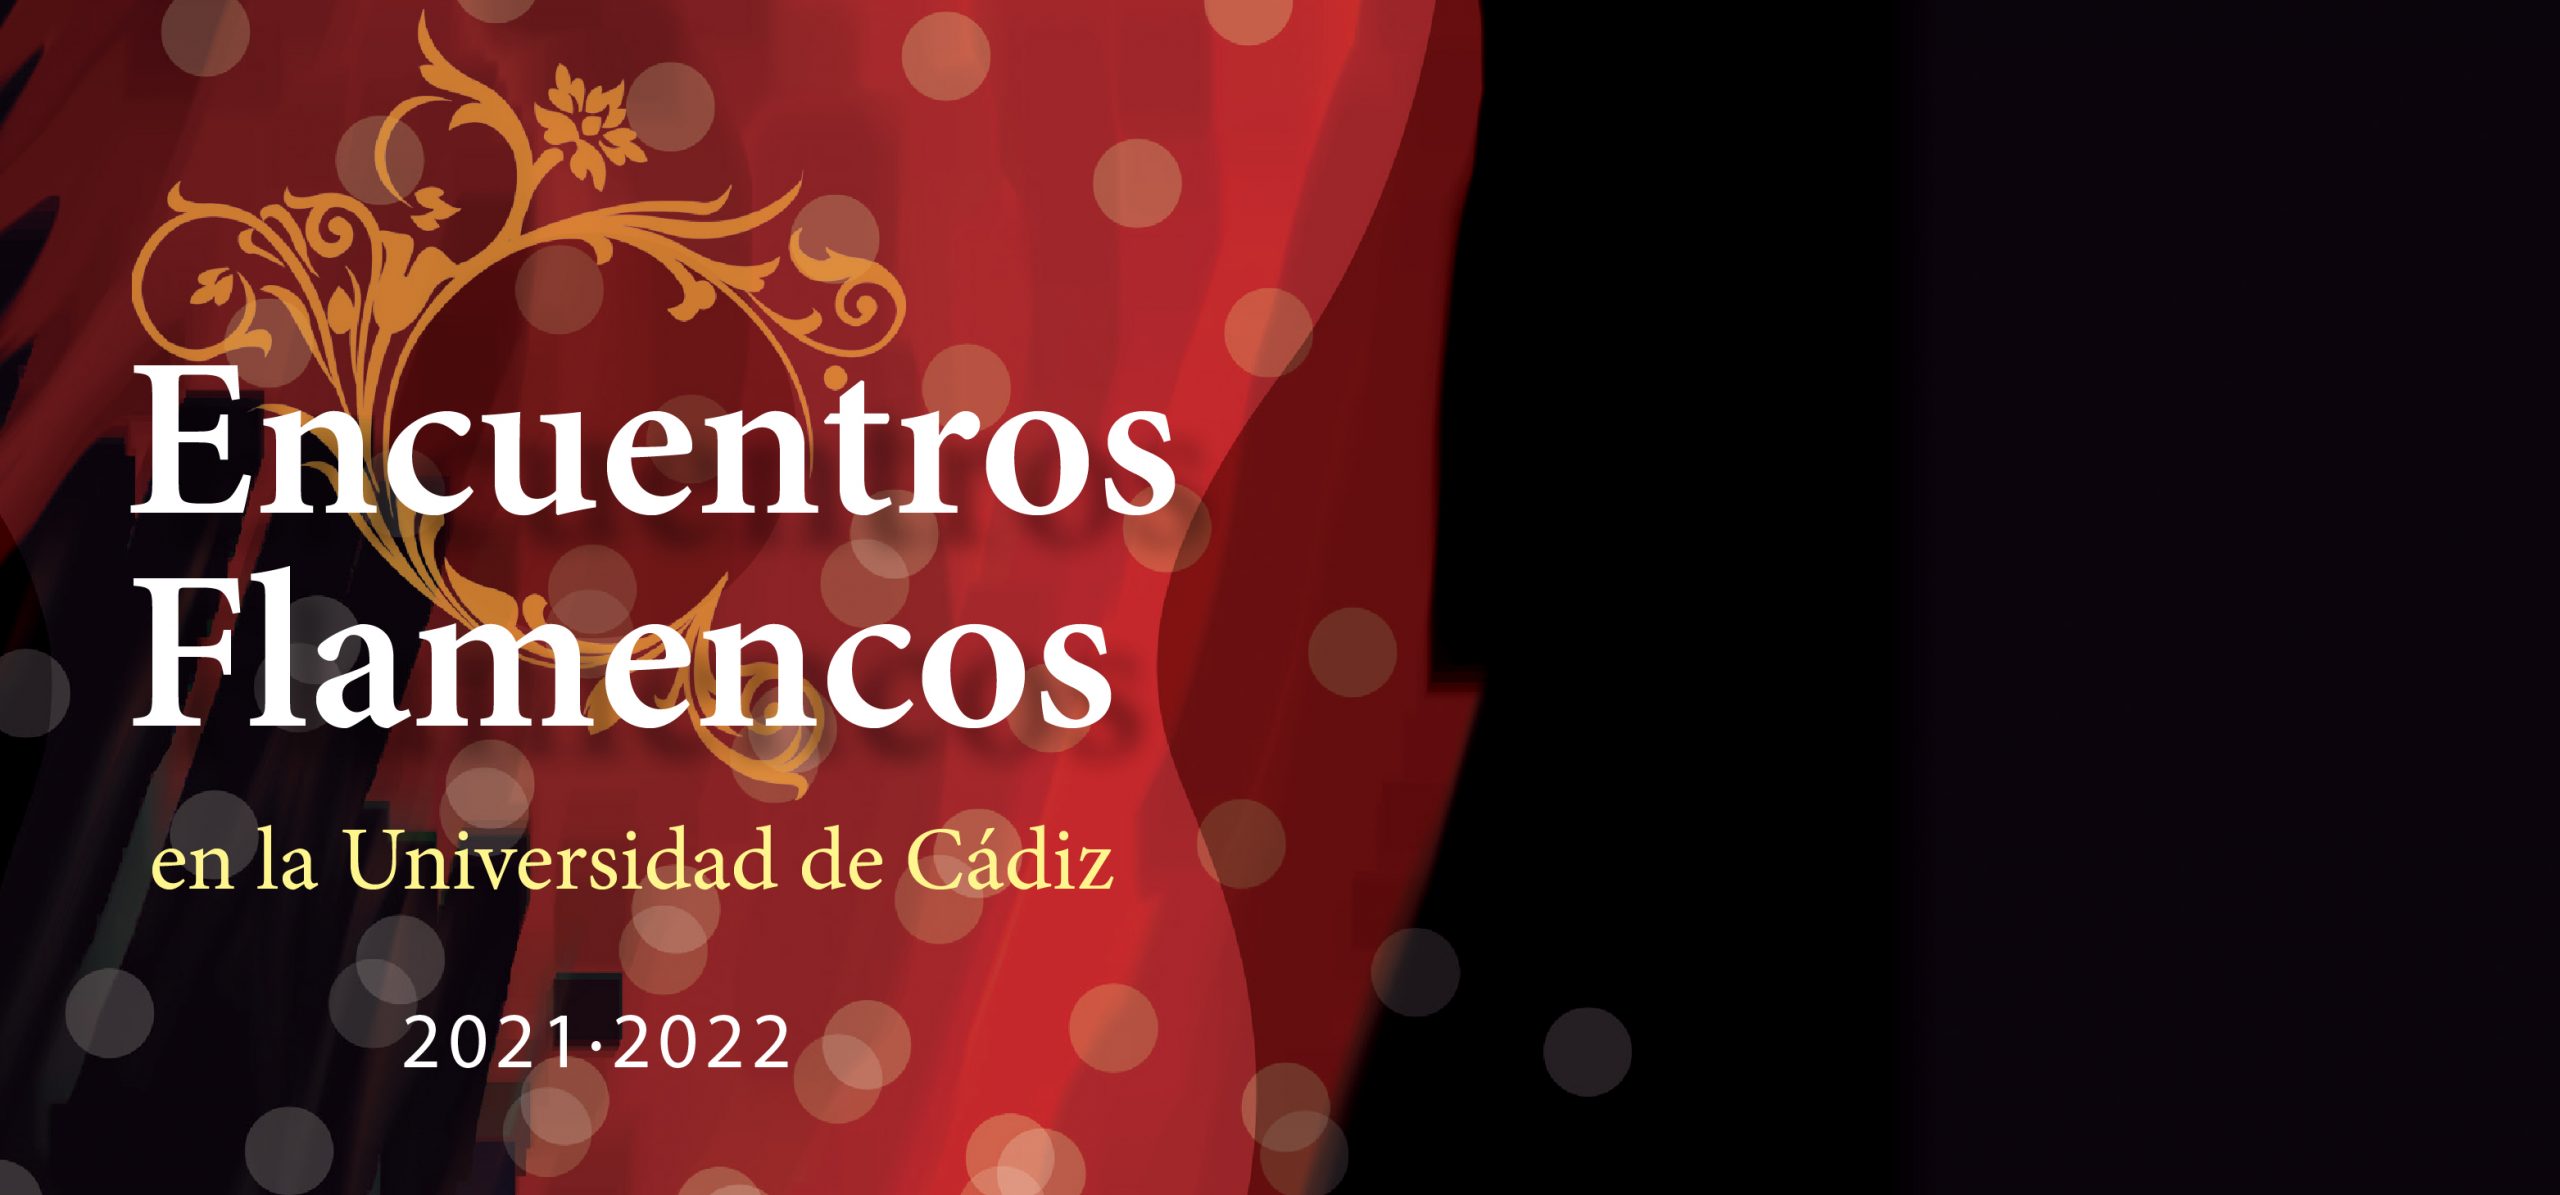 Víctor Monge “Serranito” | Encuentros Flamencos de la UCA